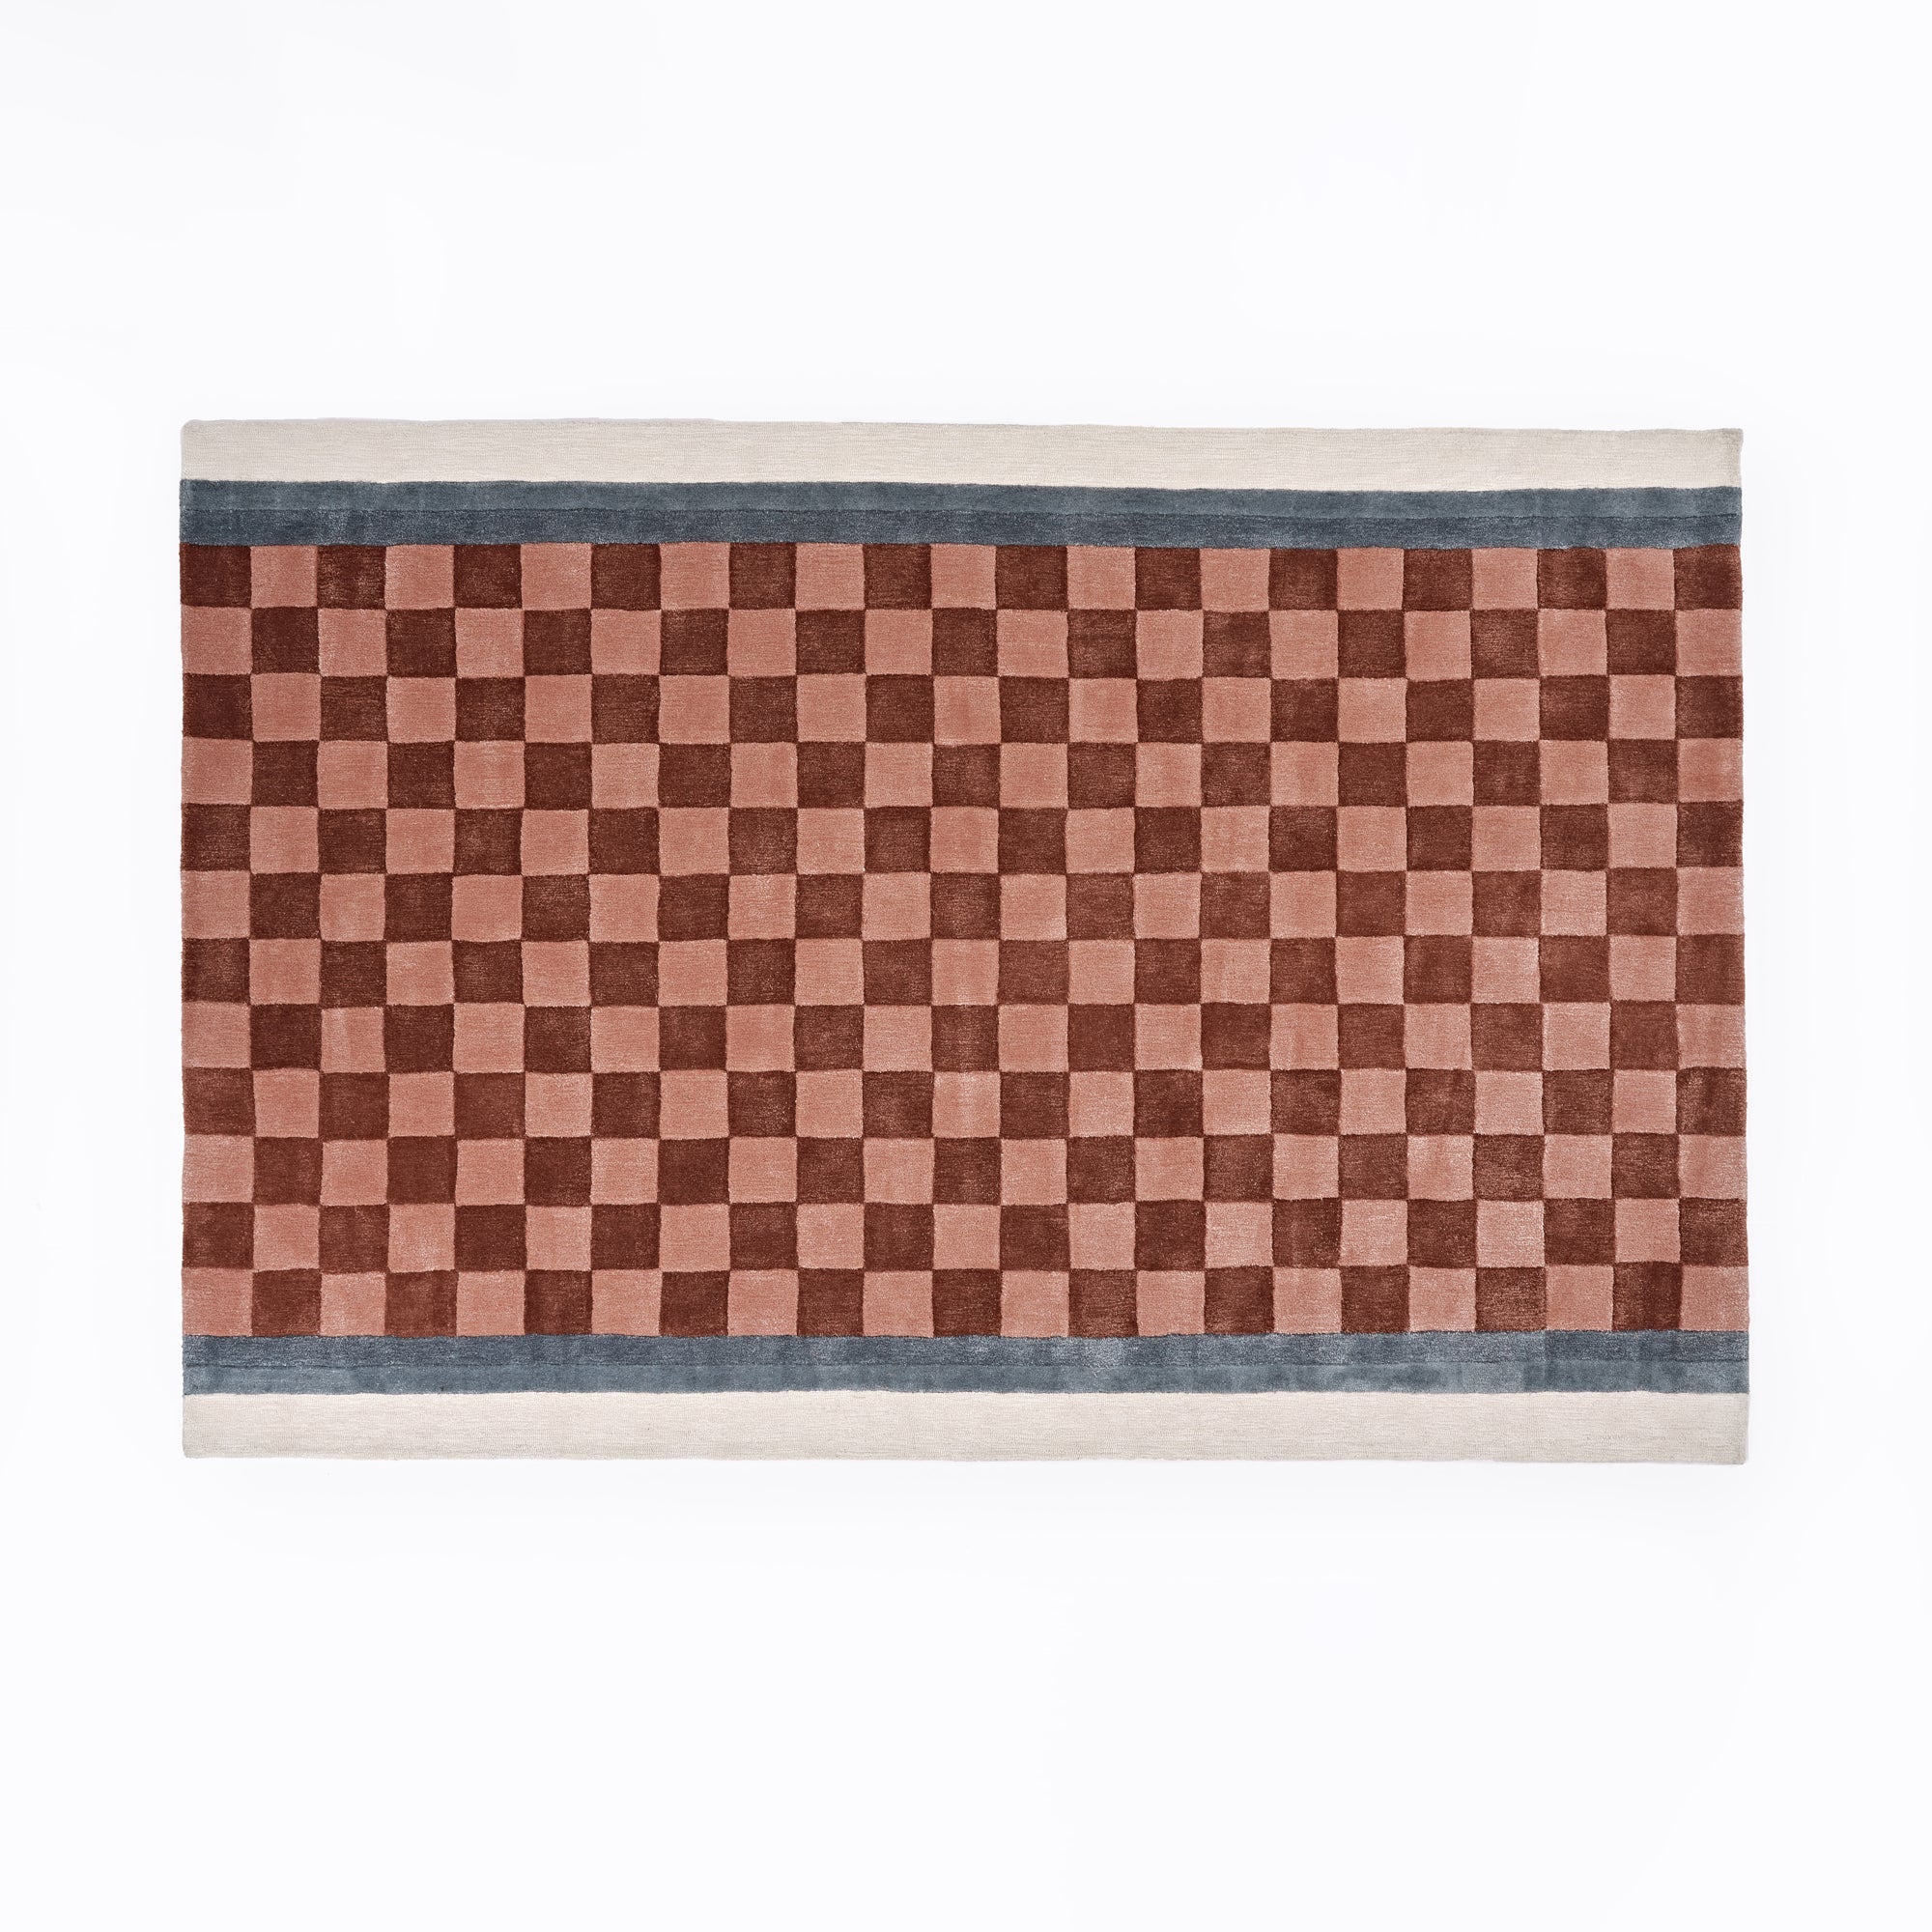 Louis Vuitton Monogram Tile Crop Top Blue. Size M0